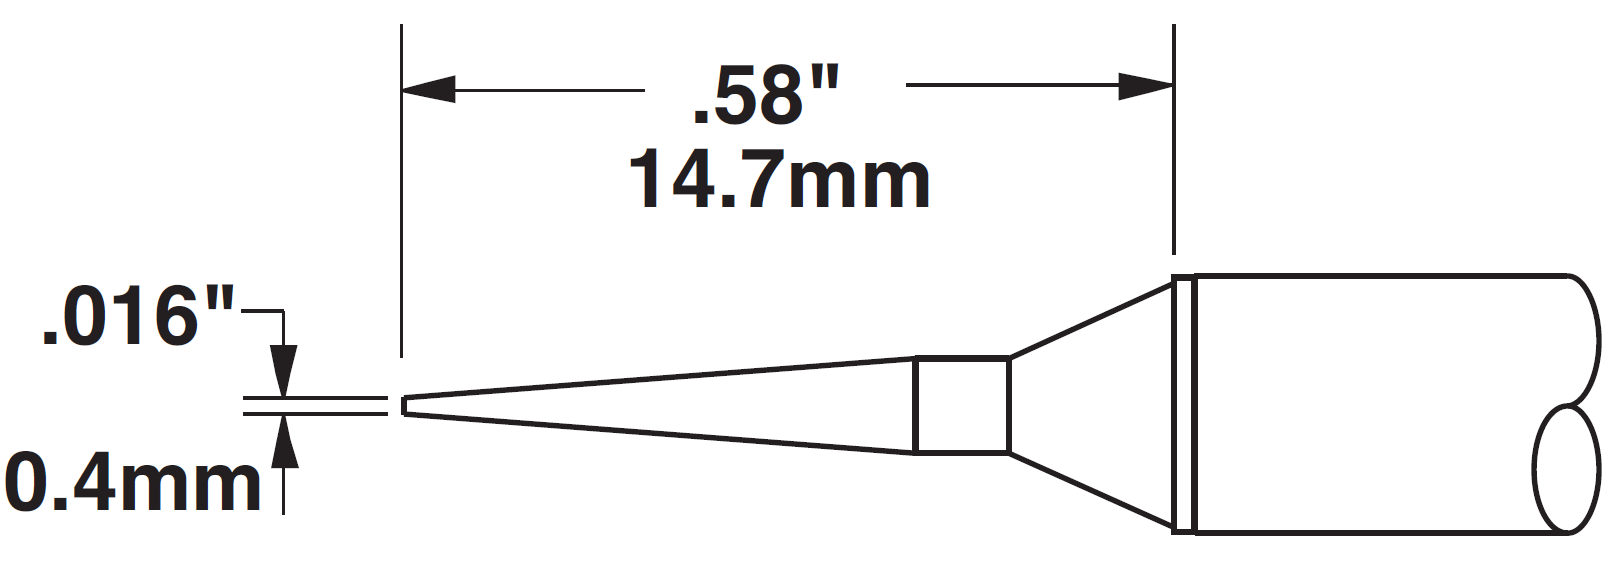 Картридж-наконечник для СV/MX, конус удлиненный 0.4х14.7мм (замена STTC-545)